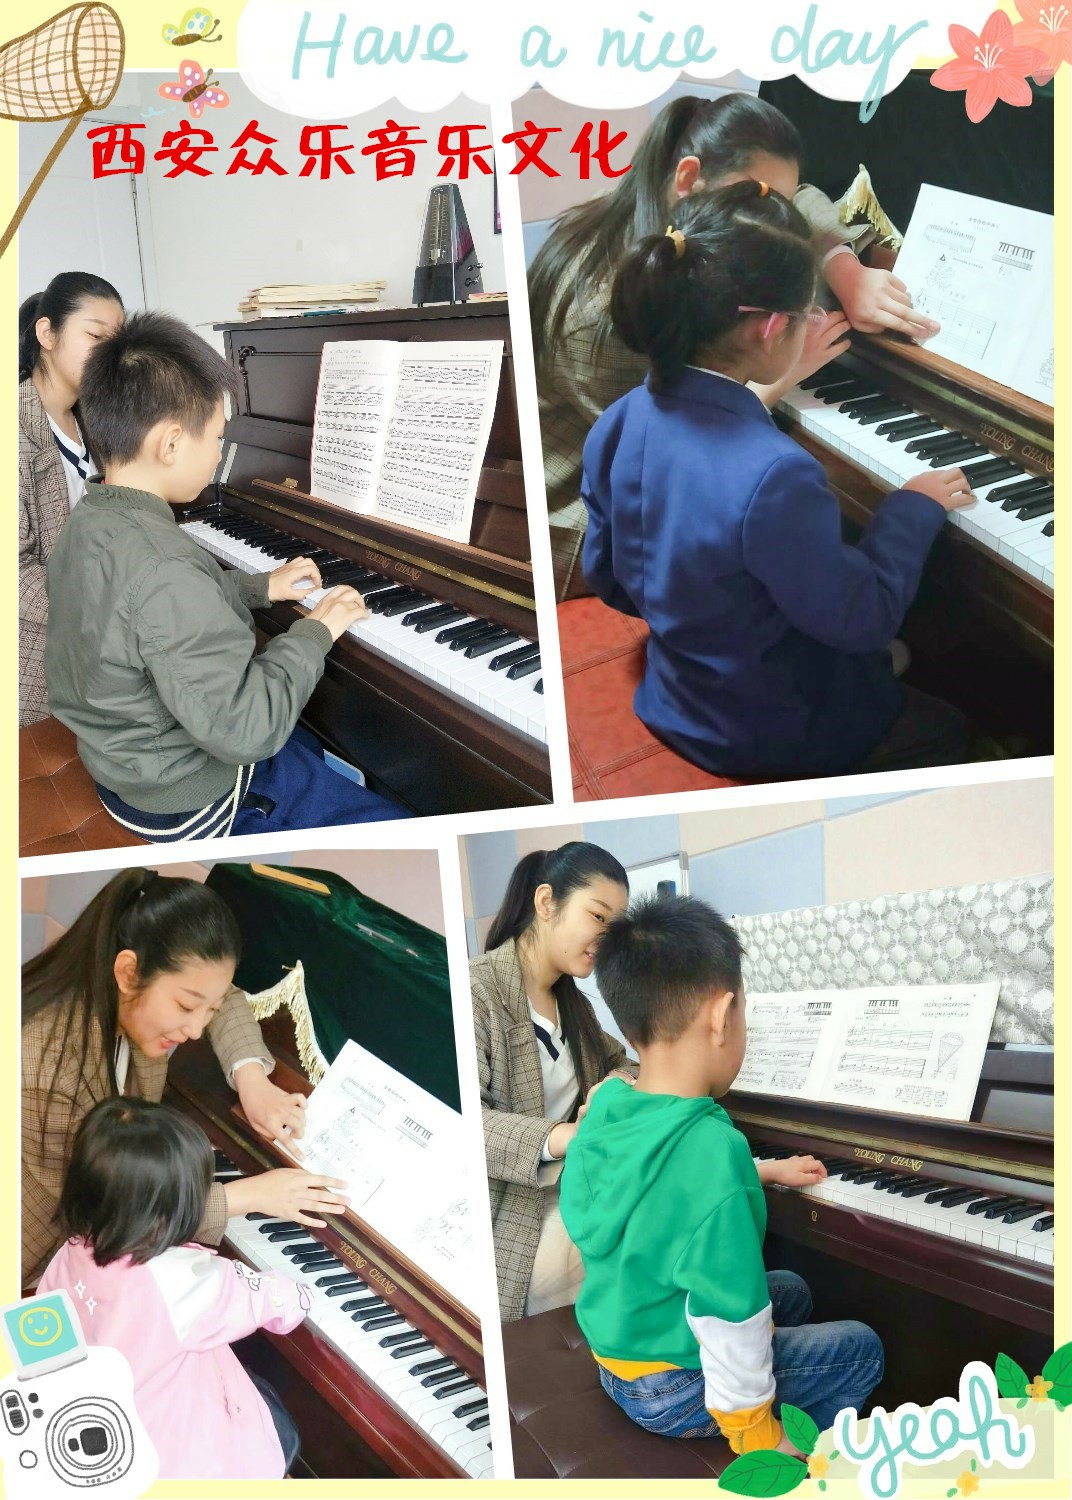 北郊未央经开区汉神熙地港附近专业钢琴班又好又便宜 